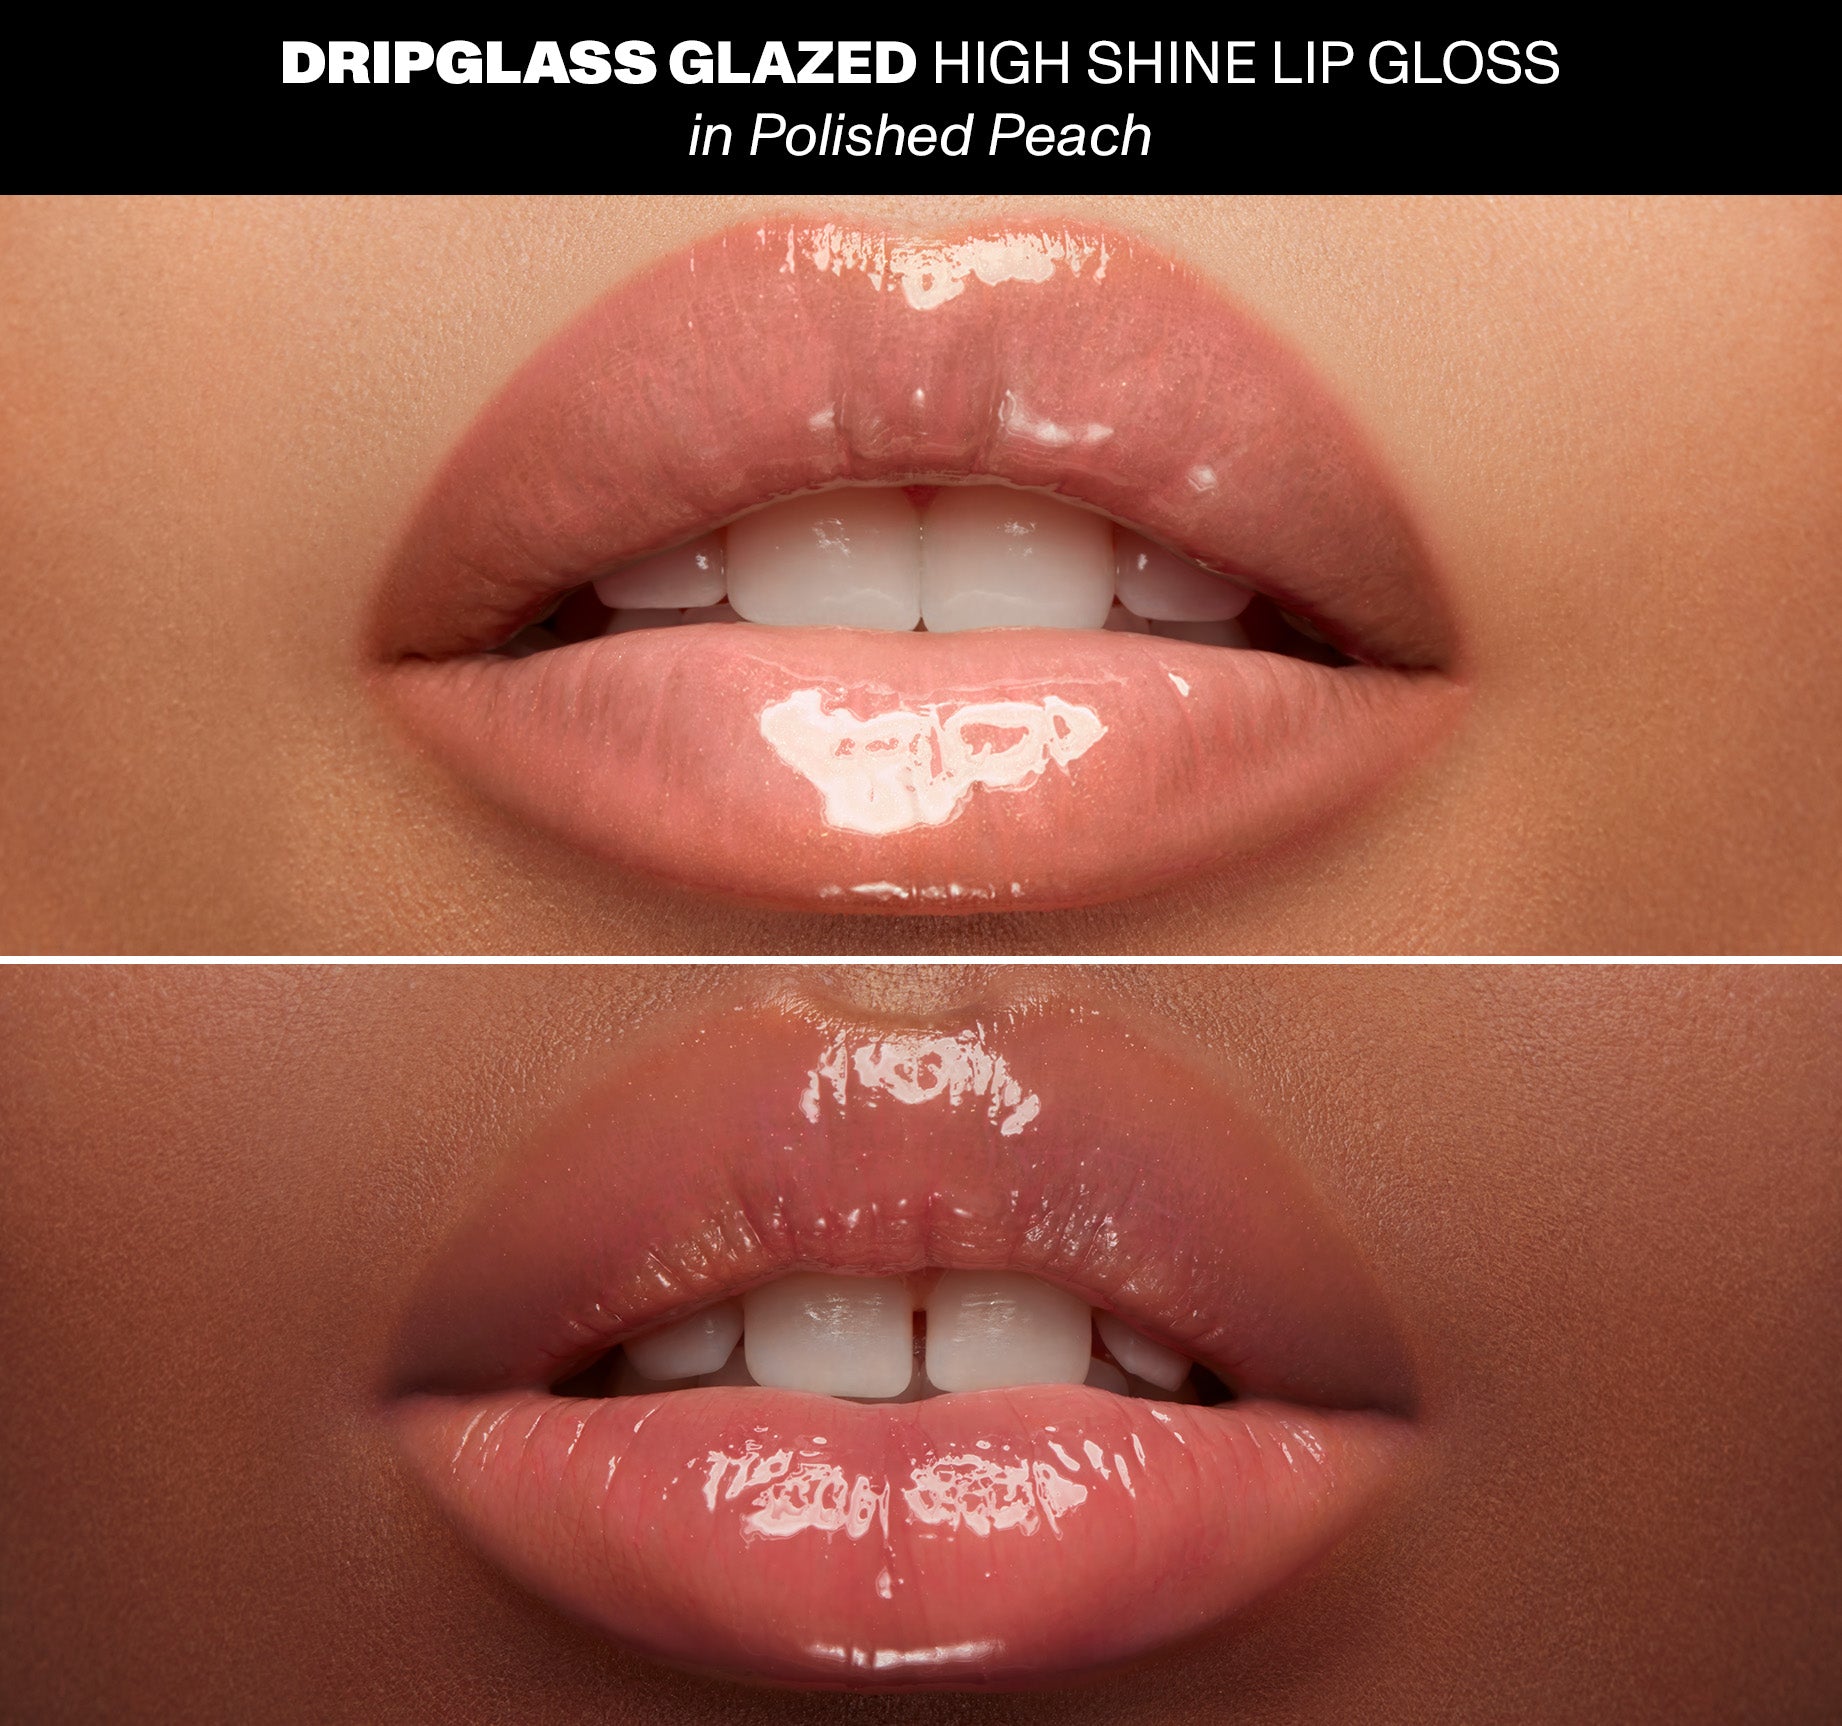 Dripglass Glazed High Shine Lip Gloss - Polished Peach - Image 4